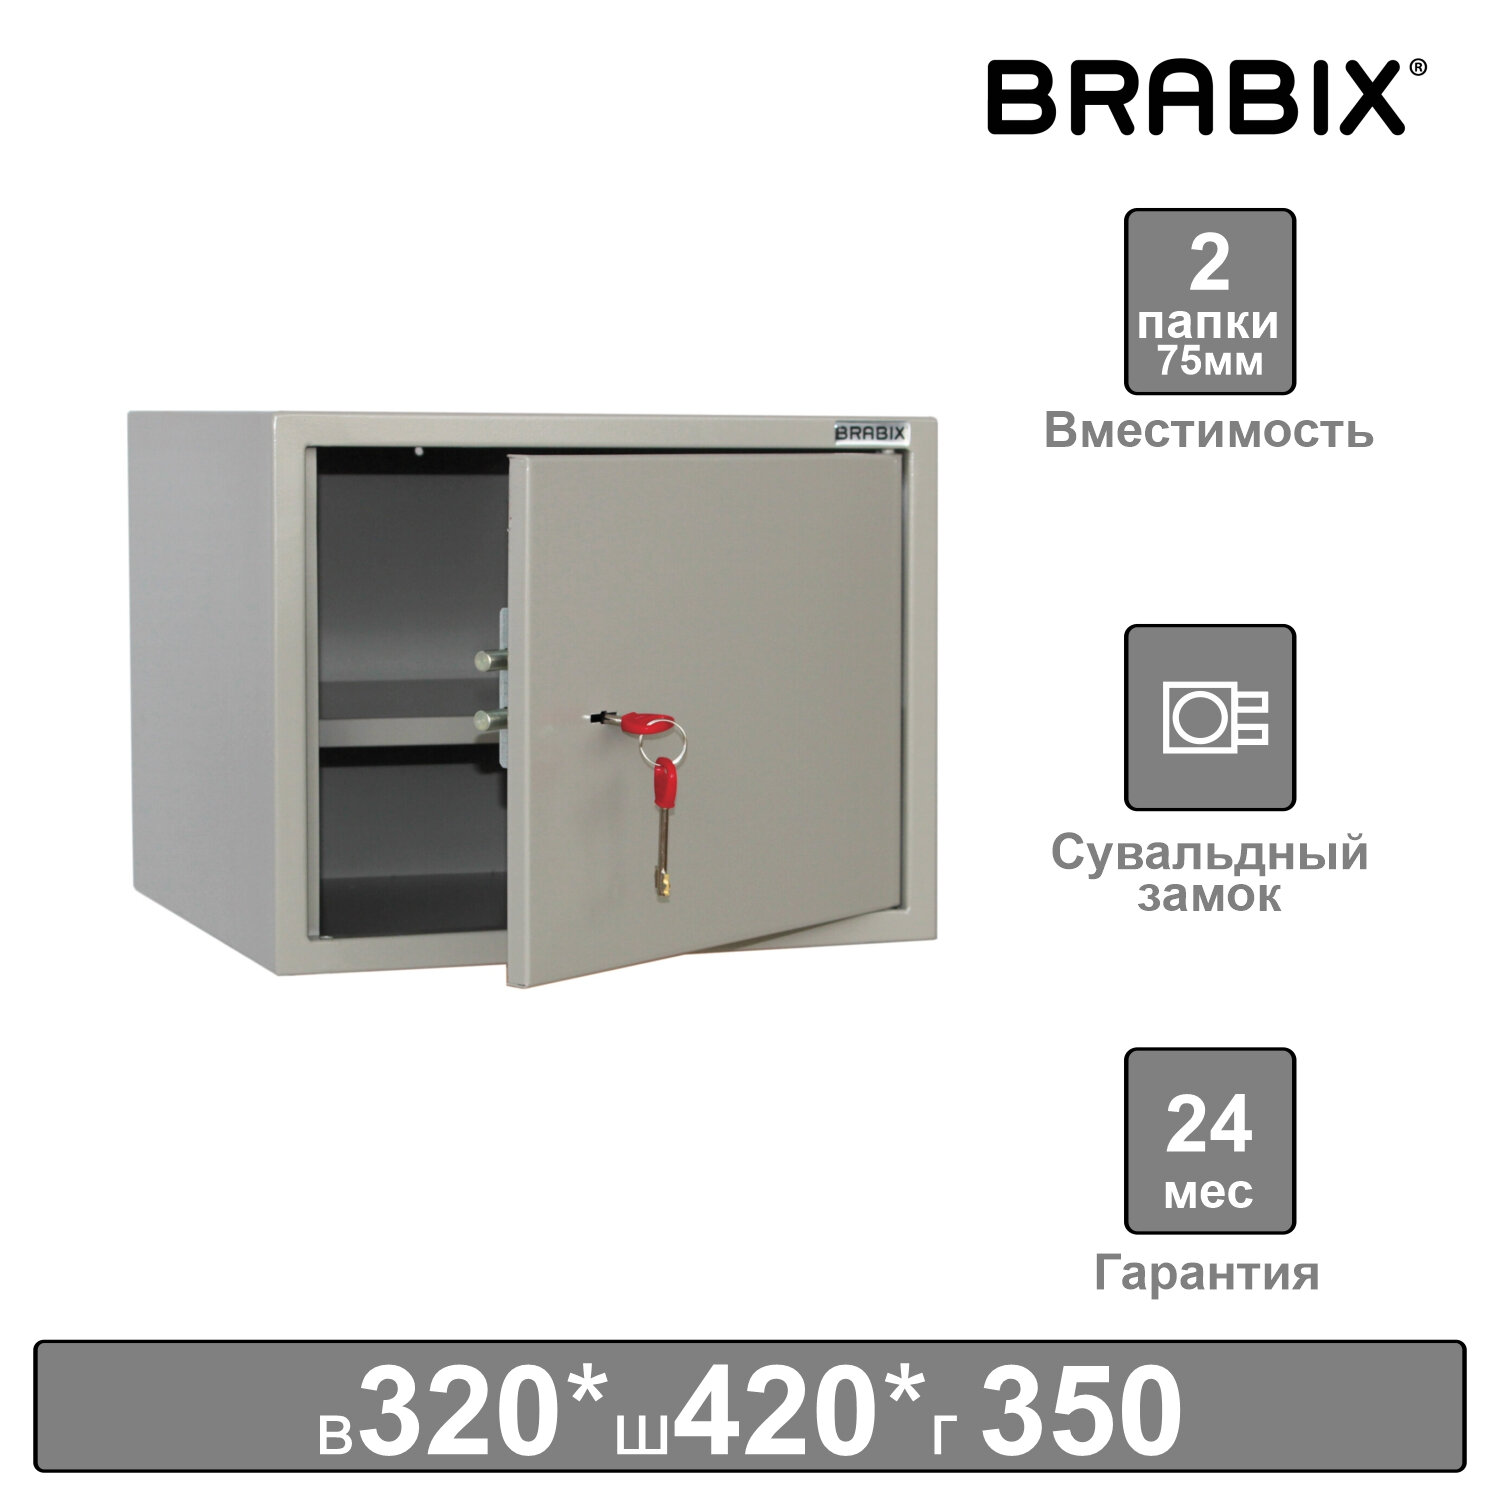 Brabix     BRABIX KBS-02, 320420350 , 9,6 , , 291151